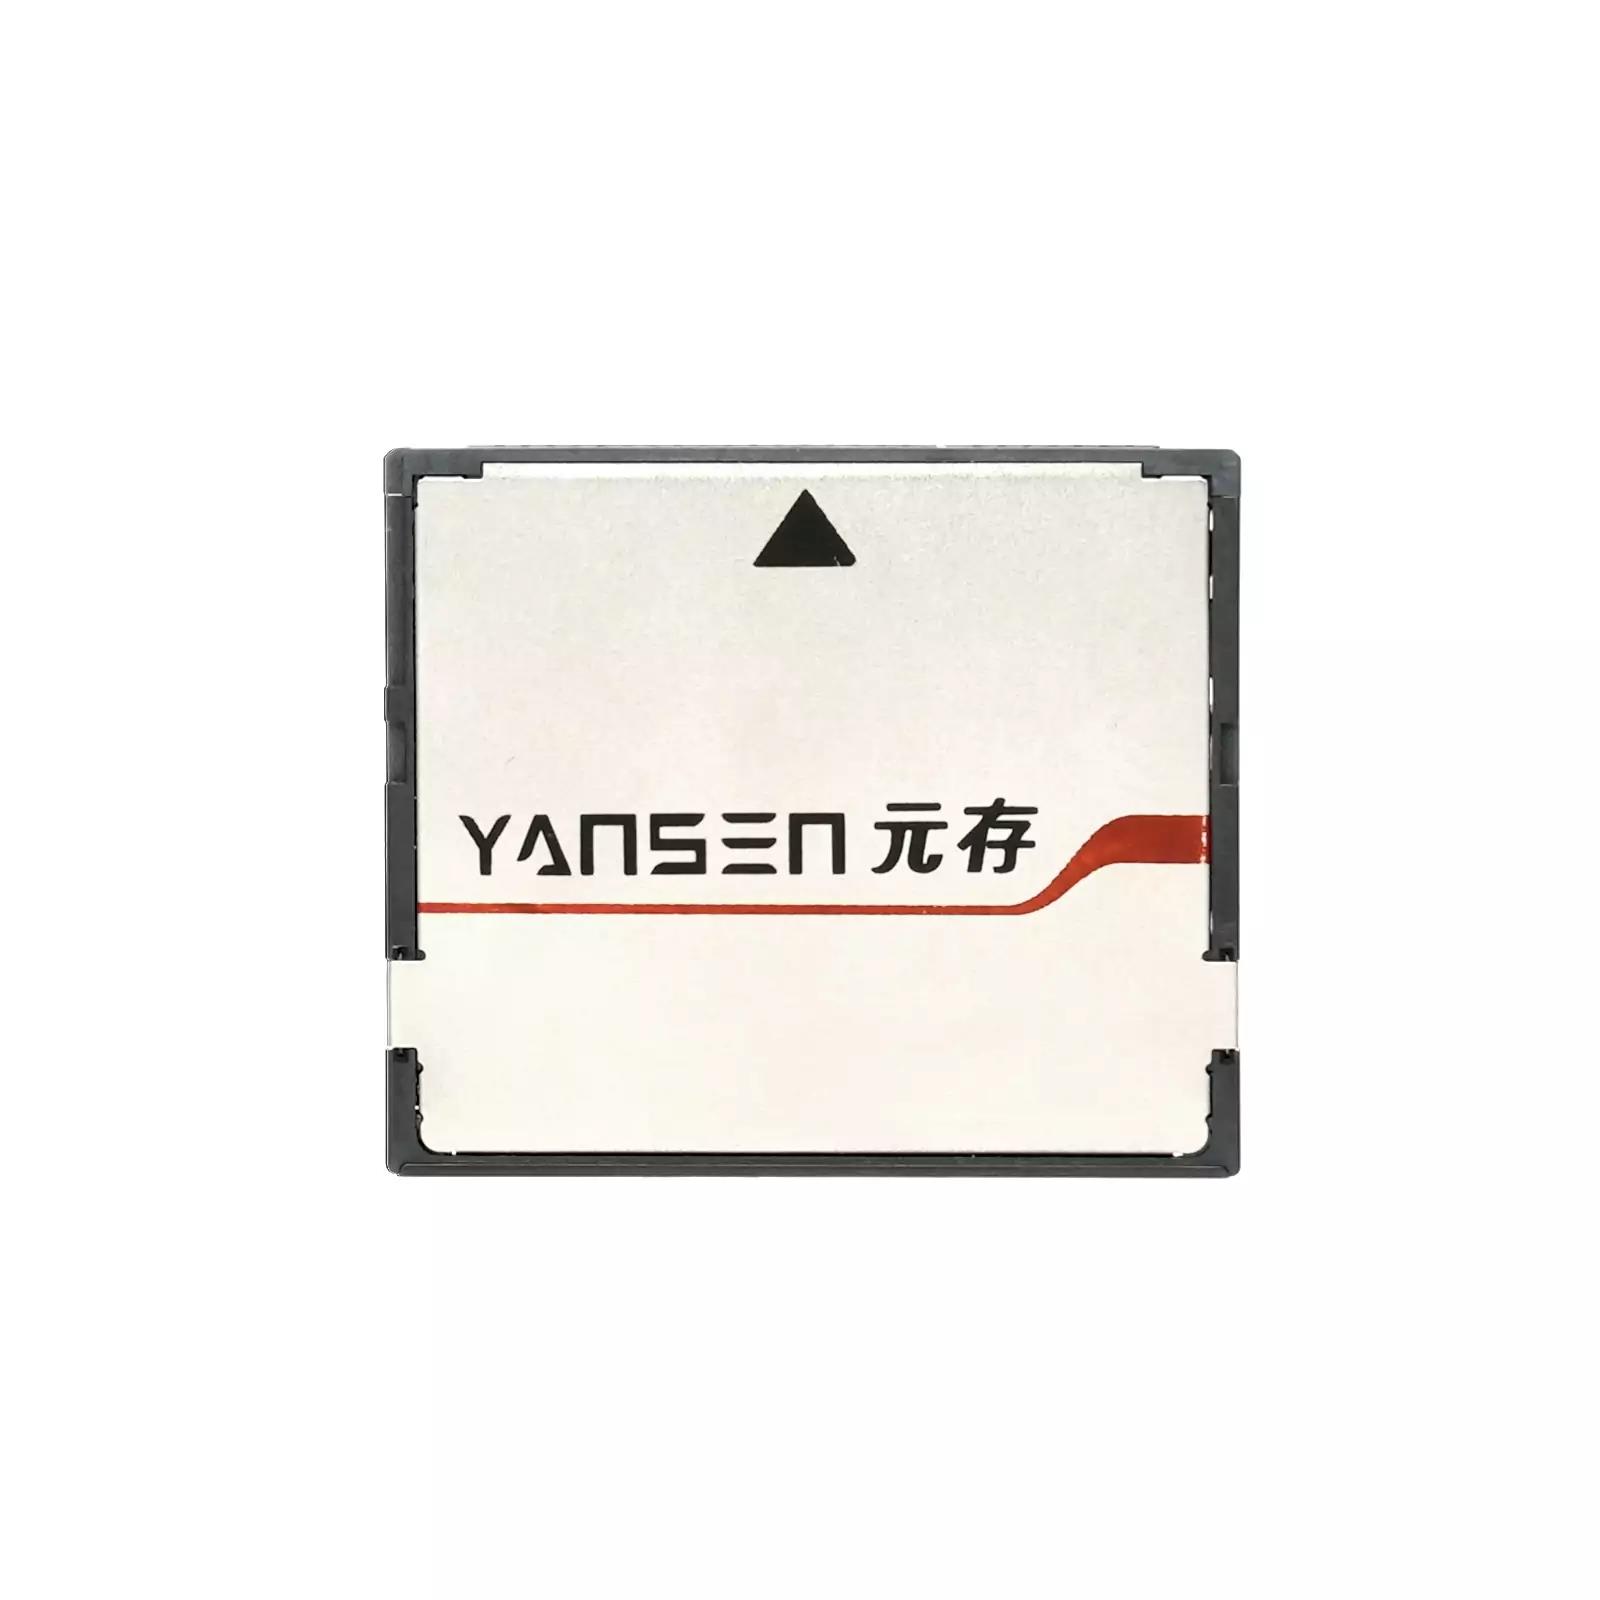 YSCS-8S